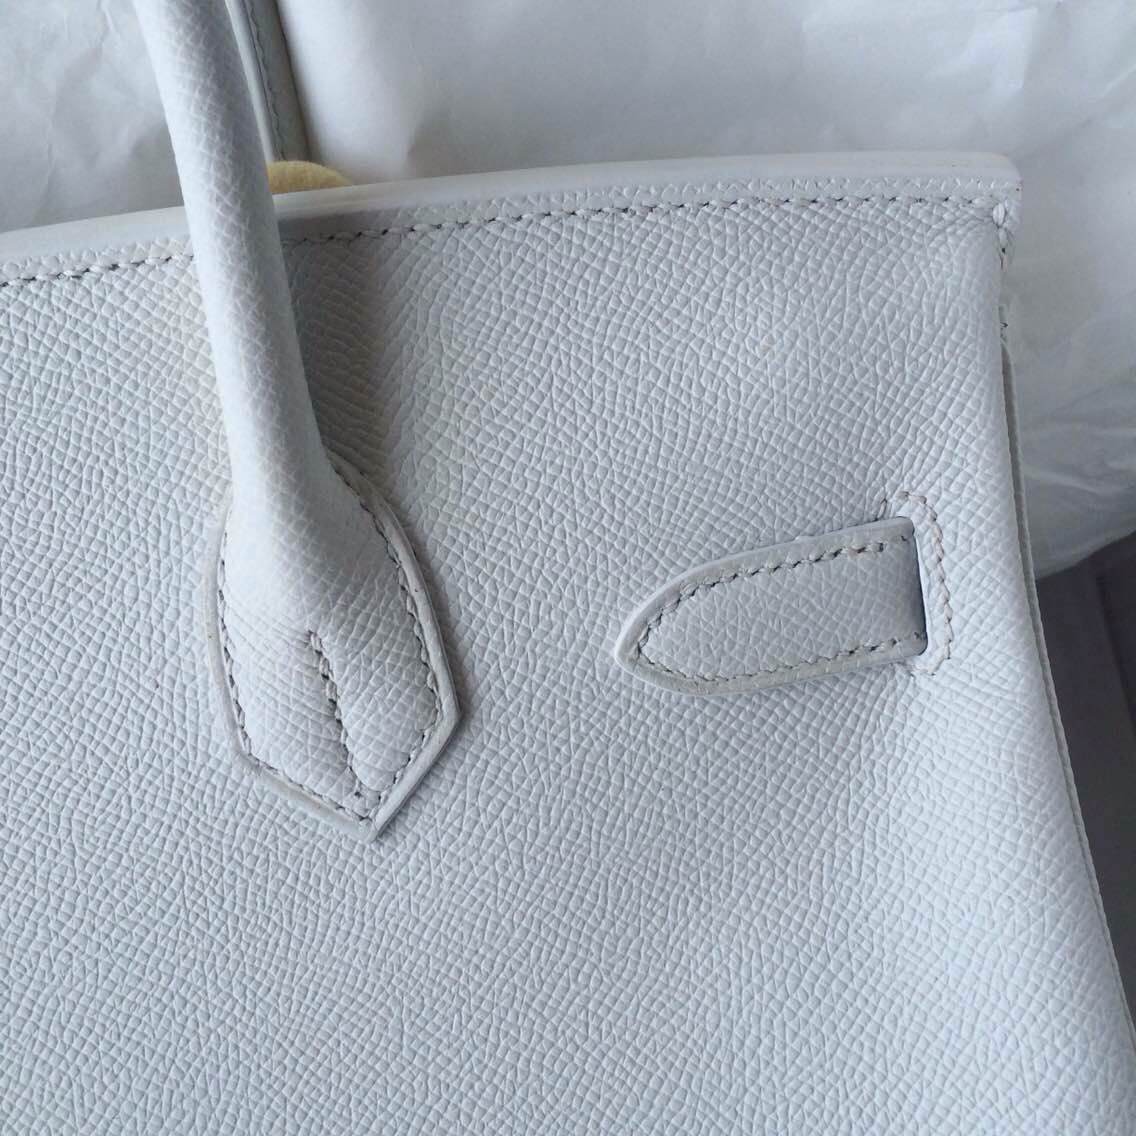 Discount Hermes Birkin Bag White/5P Pink France Epsom Leather Gold Hardware